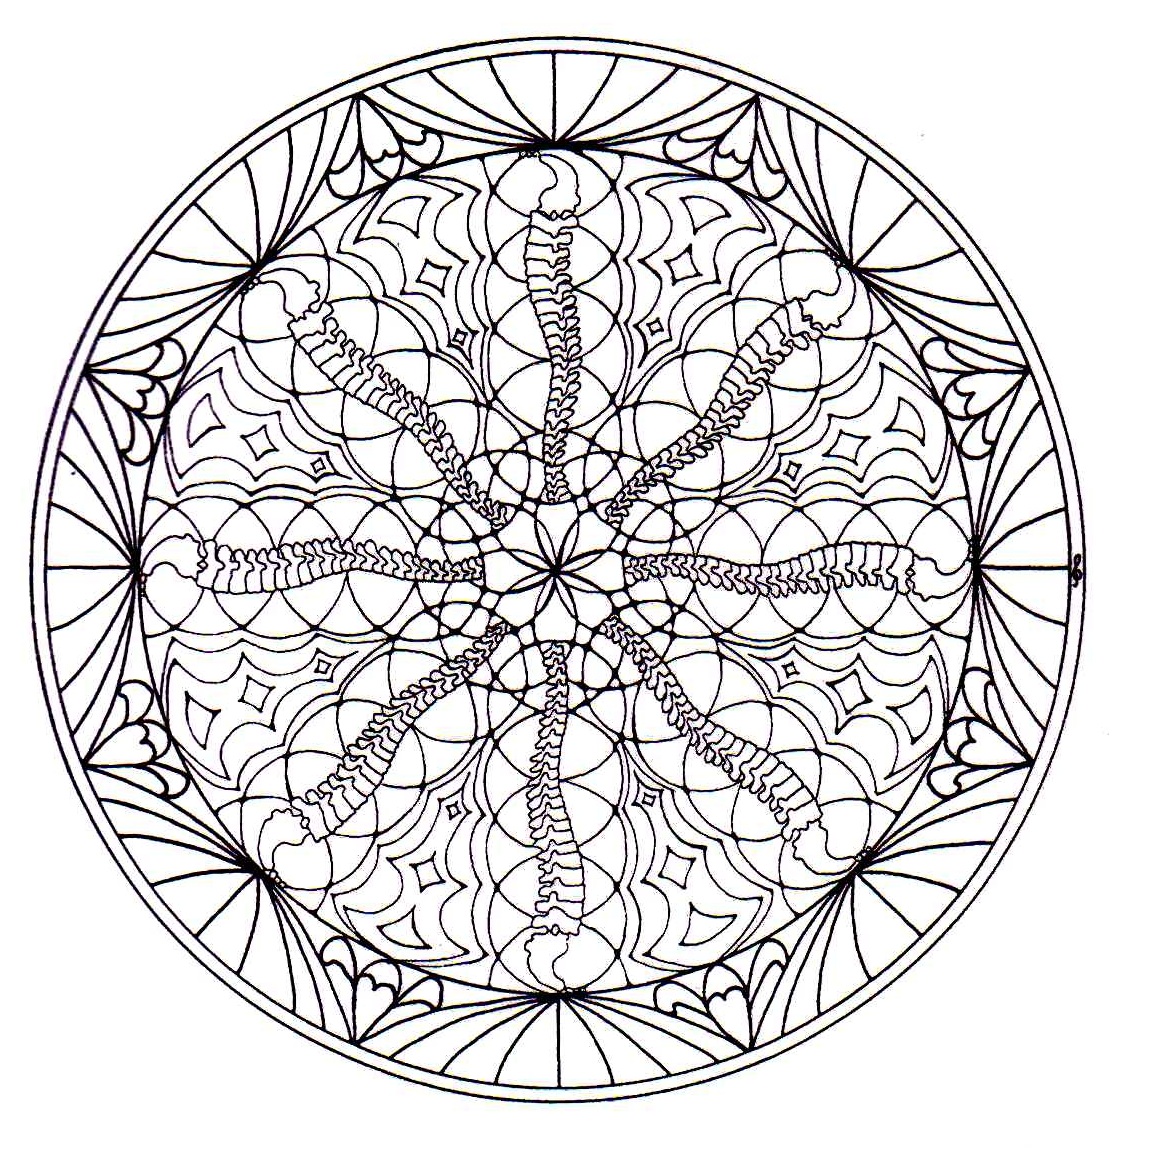 Superbe mandala avec plusieurs détails (cercles, cœurs ainsi qu'une jolie fleur au centre du mandala).